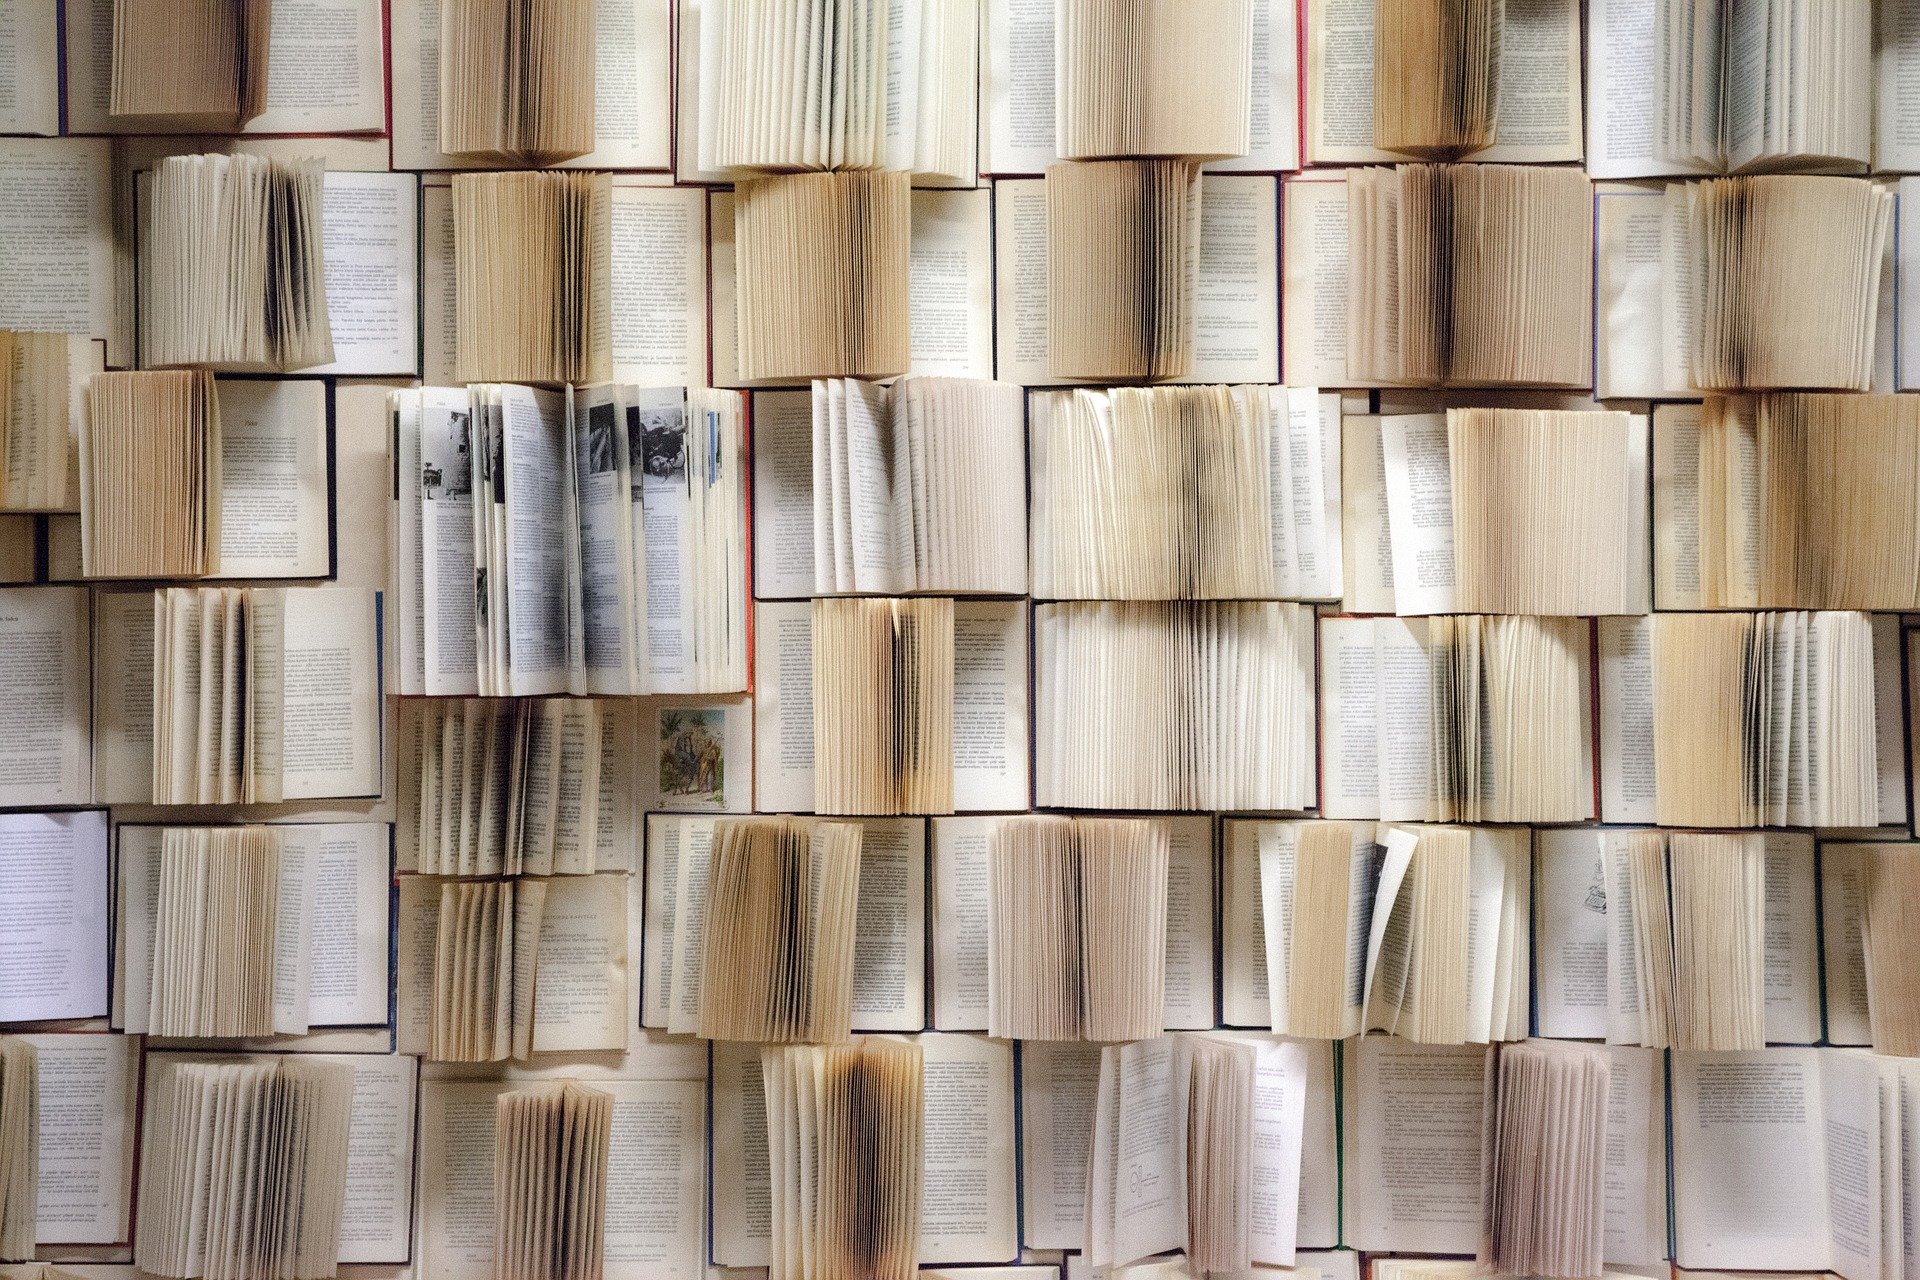 Mur de livres @ kerttu from Pixabay